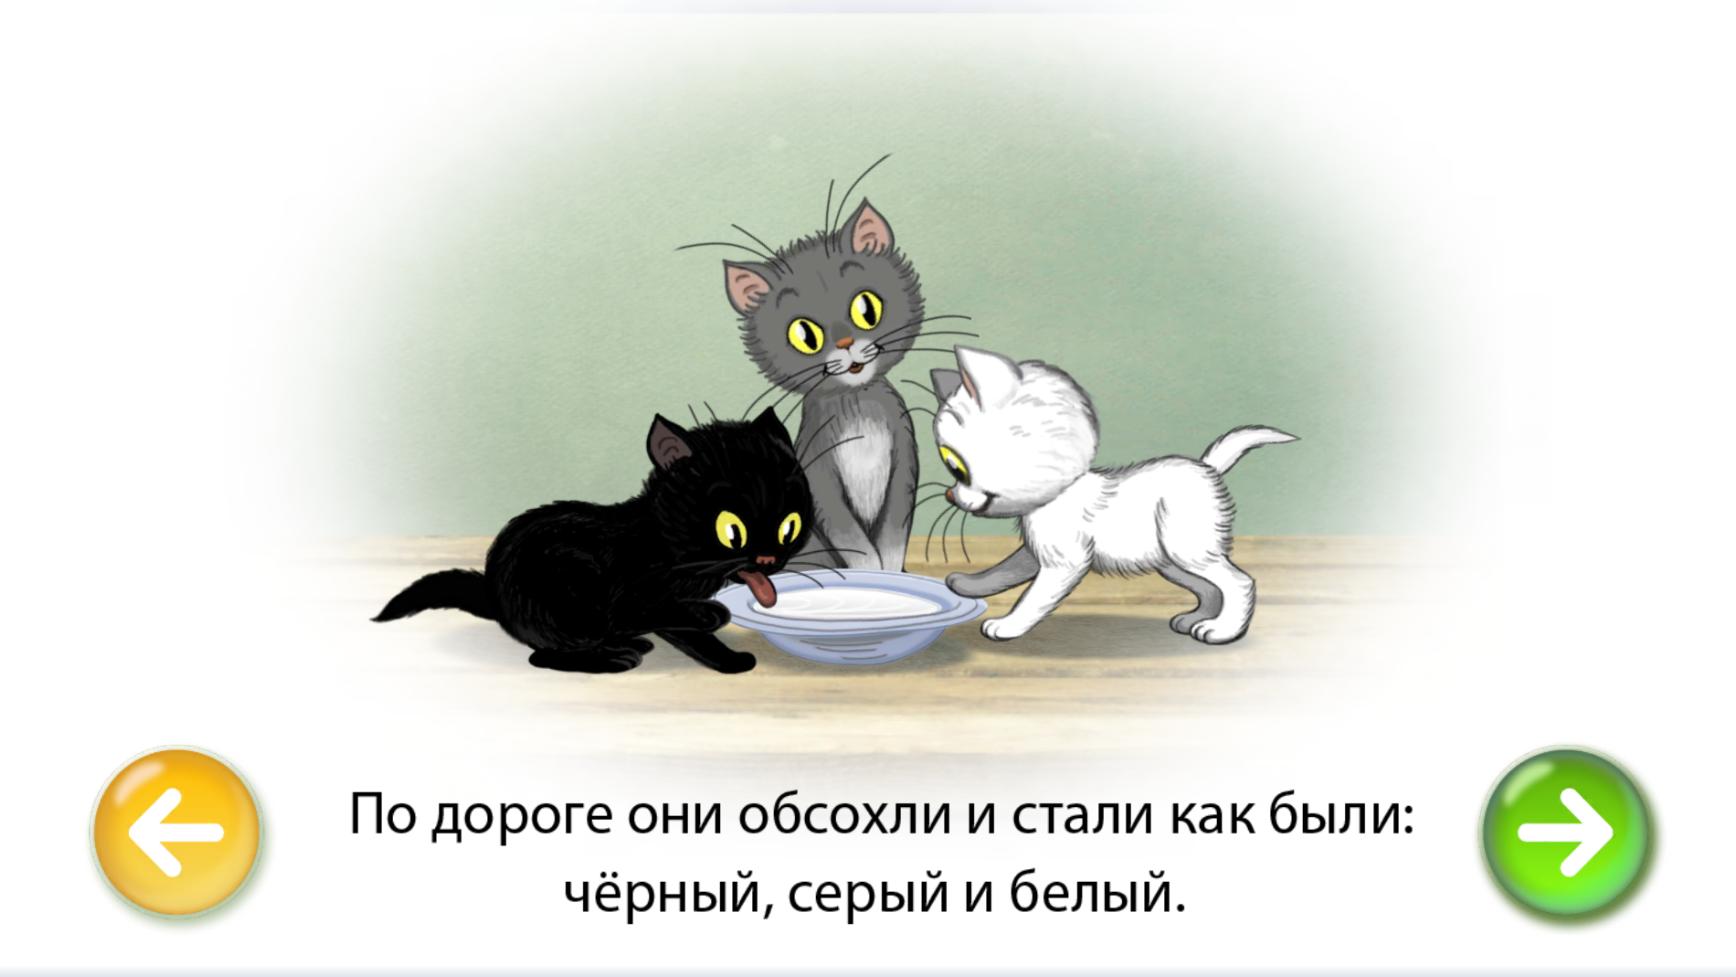 3 котенка спать. Сутеев 3 котенка. Сутеев в. "три котенка". Три котенка сказка Сутеев. Иллюстрации к сказке Сутеева три котенка.